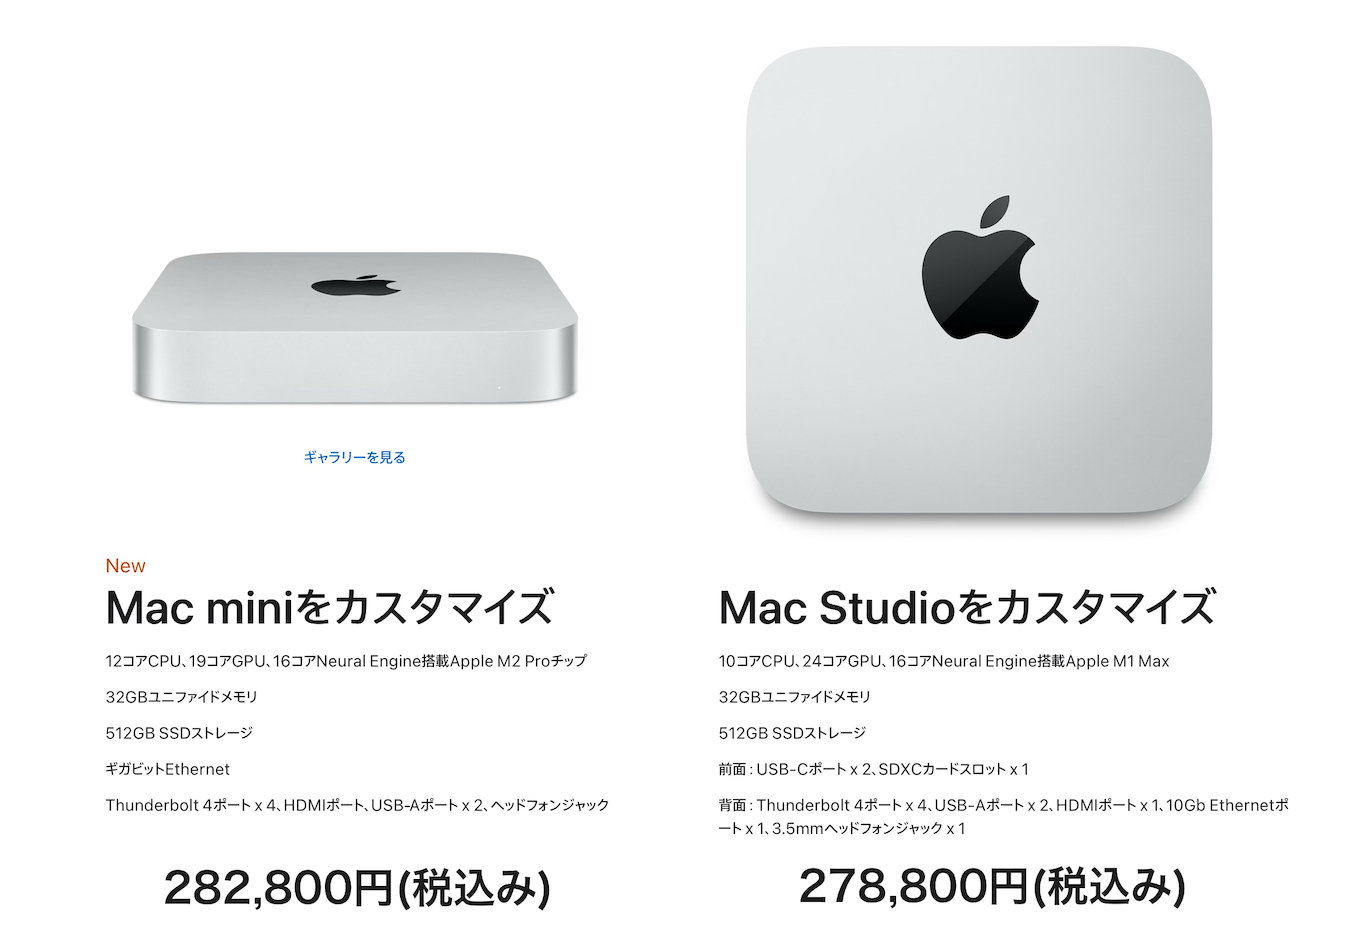 Apple M2 Pro (12CPU)を搭載したMac mini (2023)とM1 Max (10CPU)を搭載したMac Studioの価格差